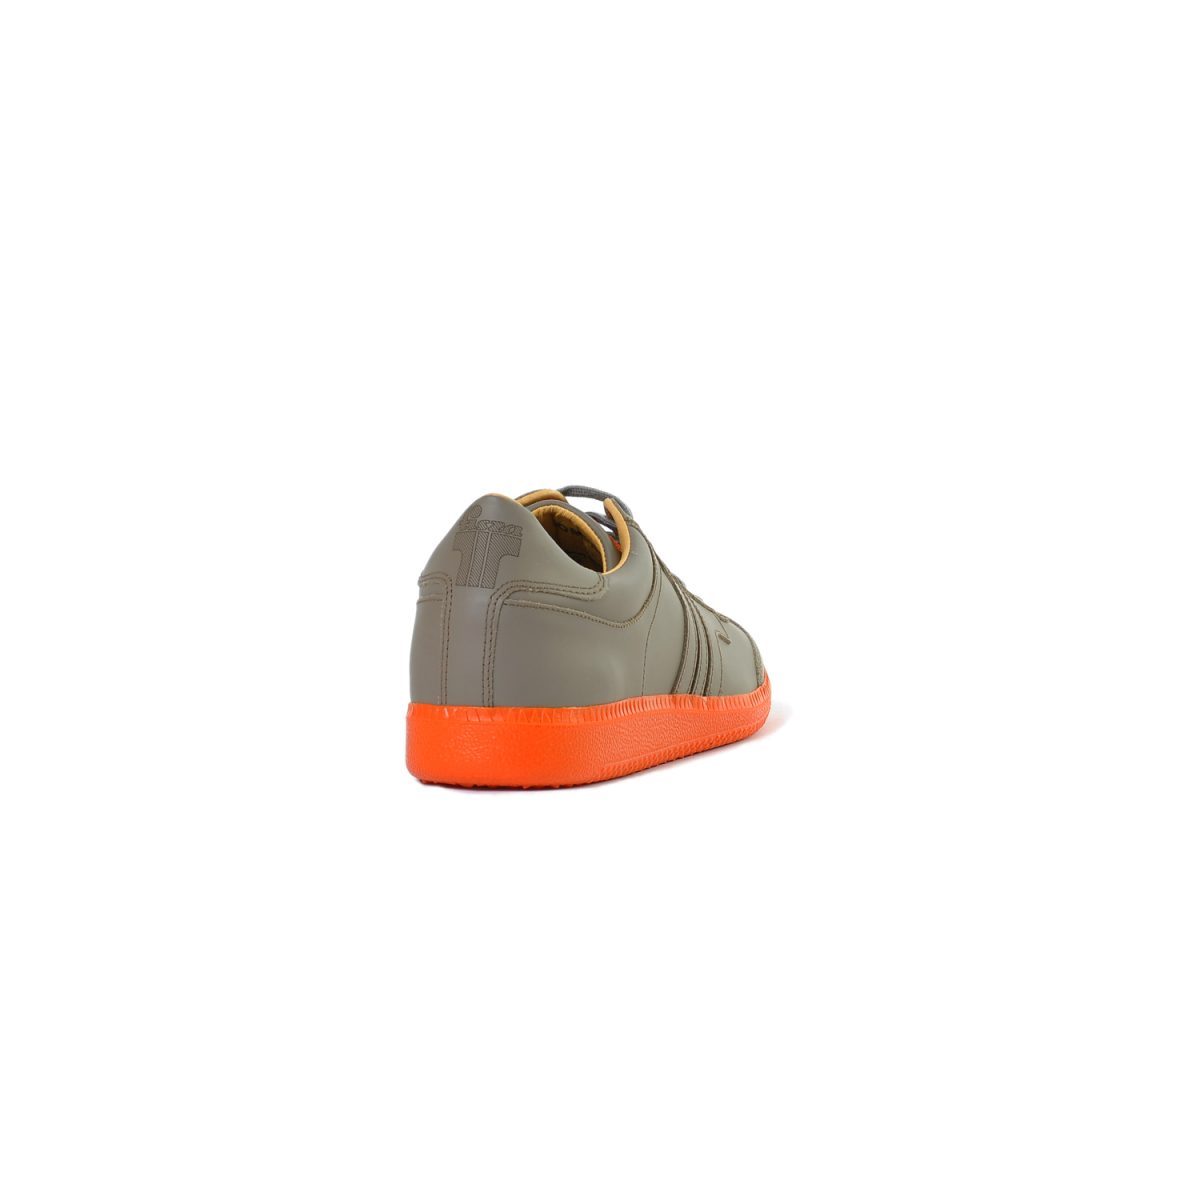 Tisza cipő - Compakt - Föld-narancs